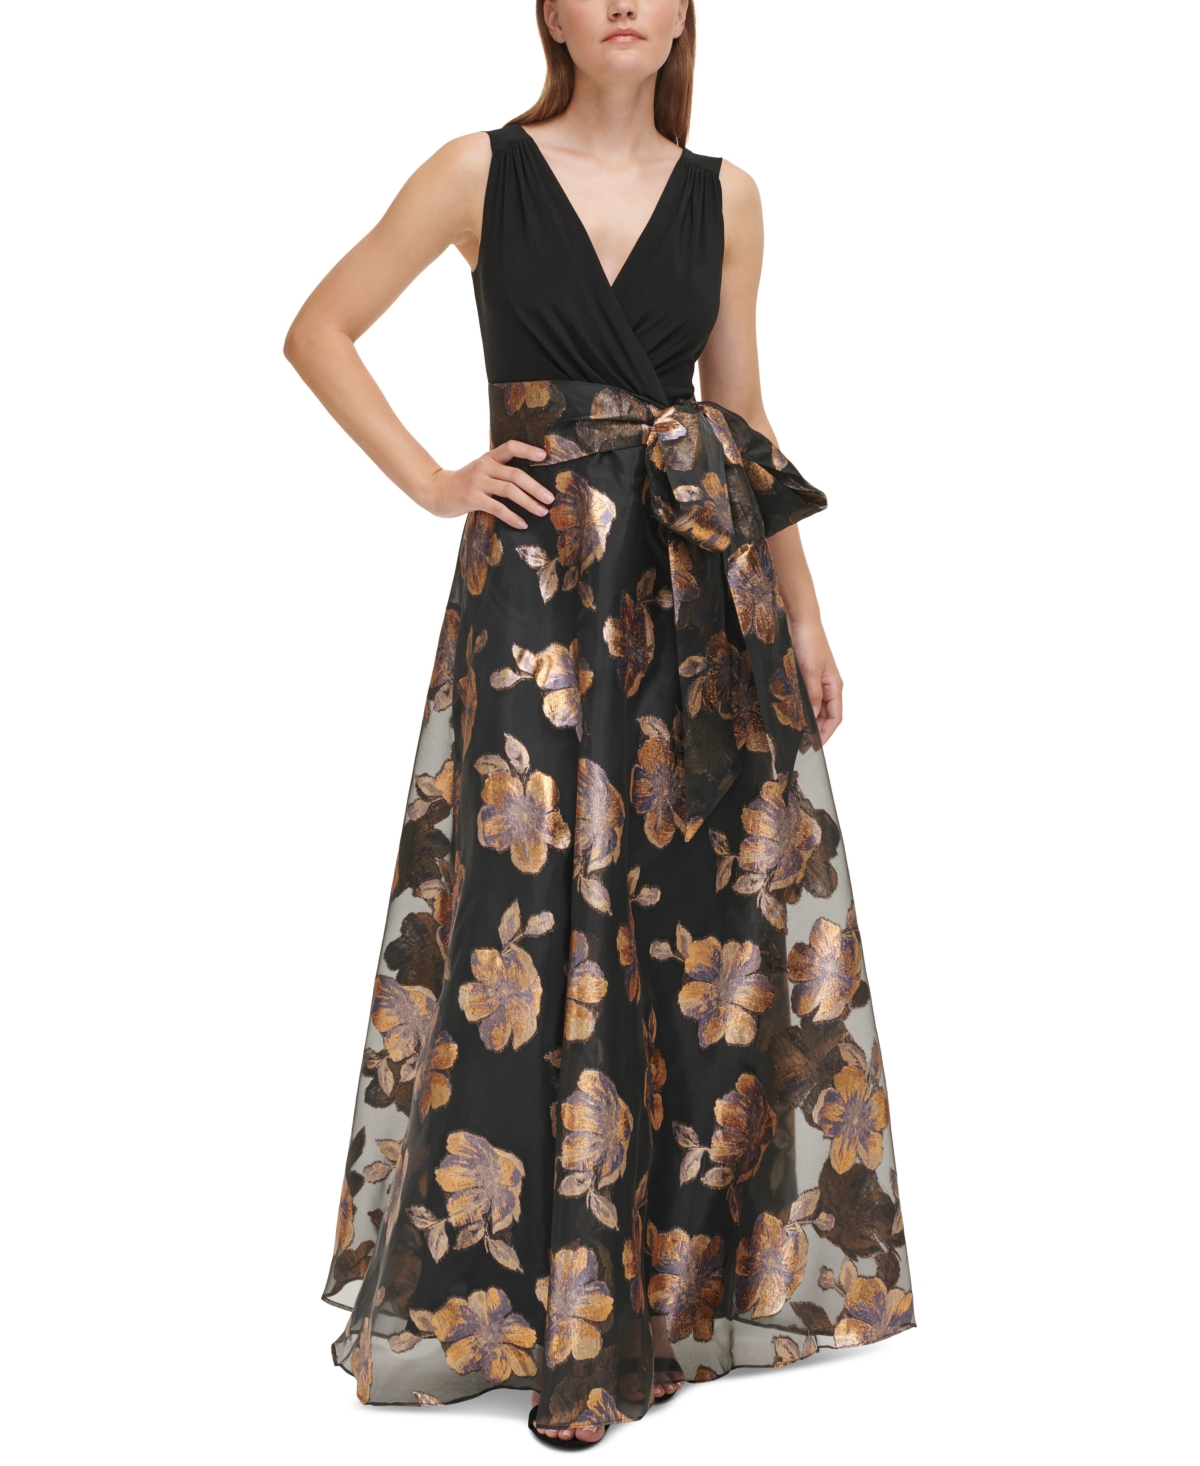 Vintage Evening Dresses, Vintage Formal Dresses Eliza J Petite Sleeveless Metallic Organza Ballgown - Black Gold $248.00 AT vintagedancer.com